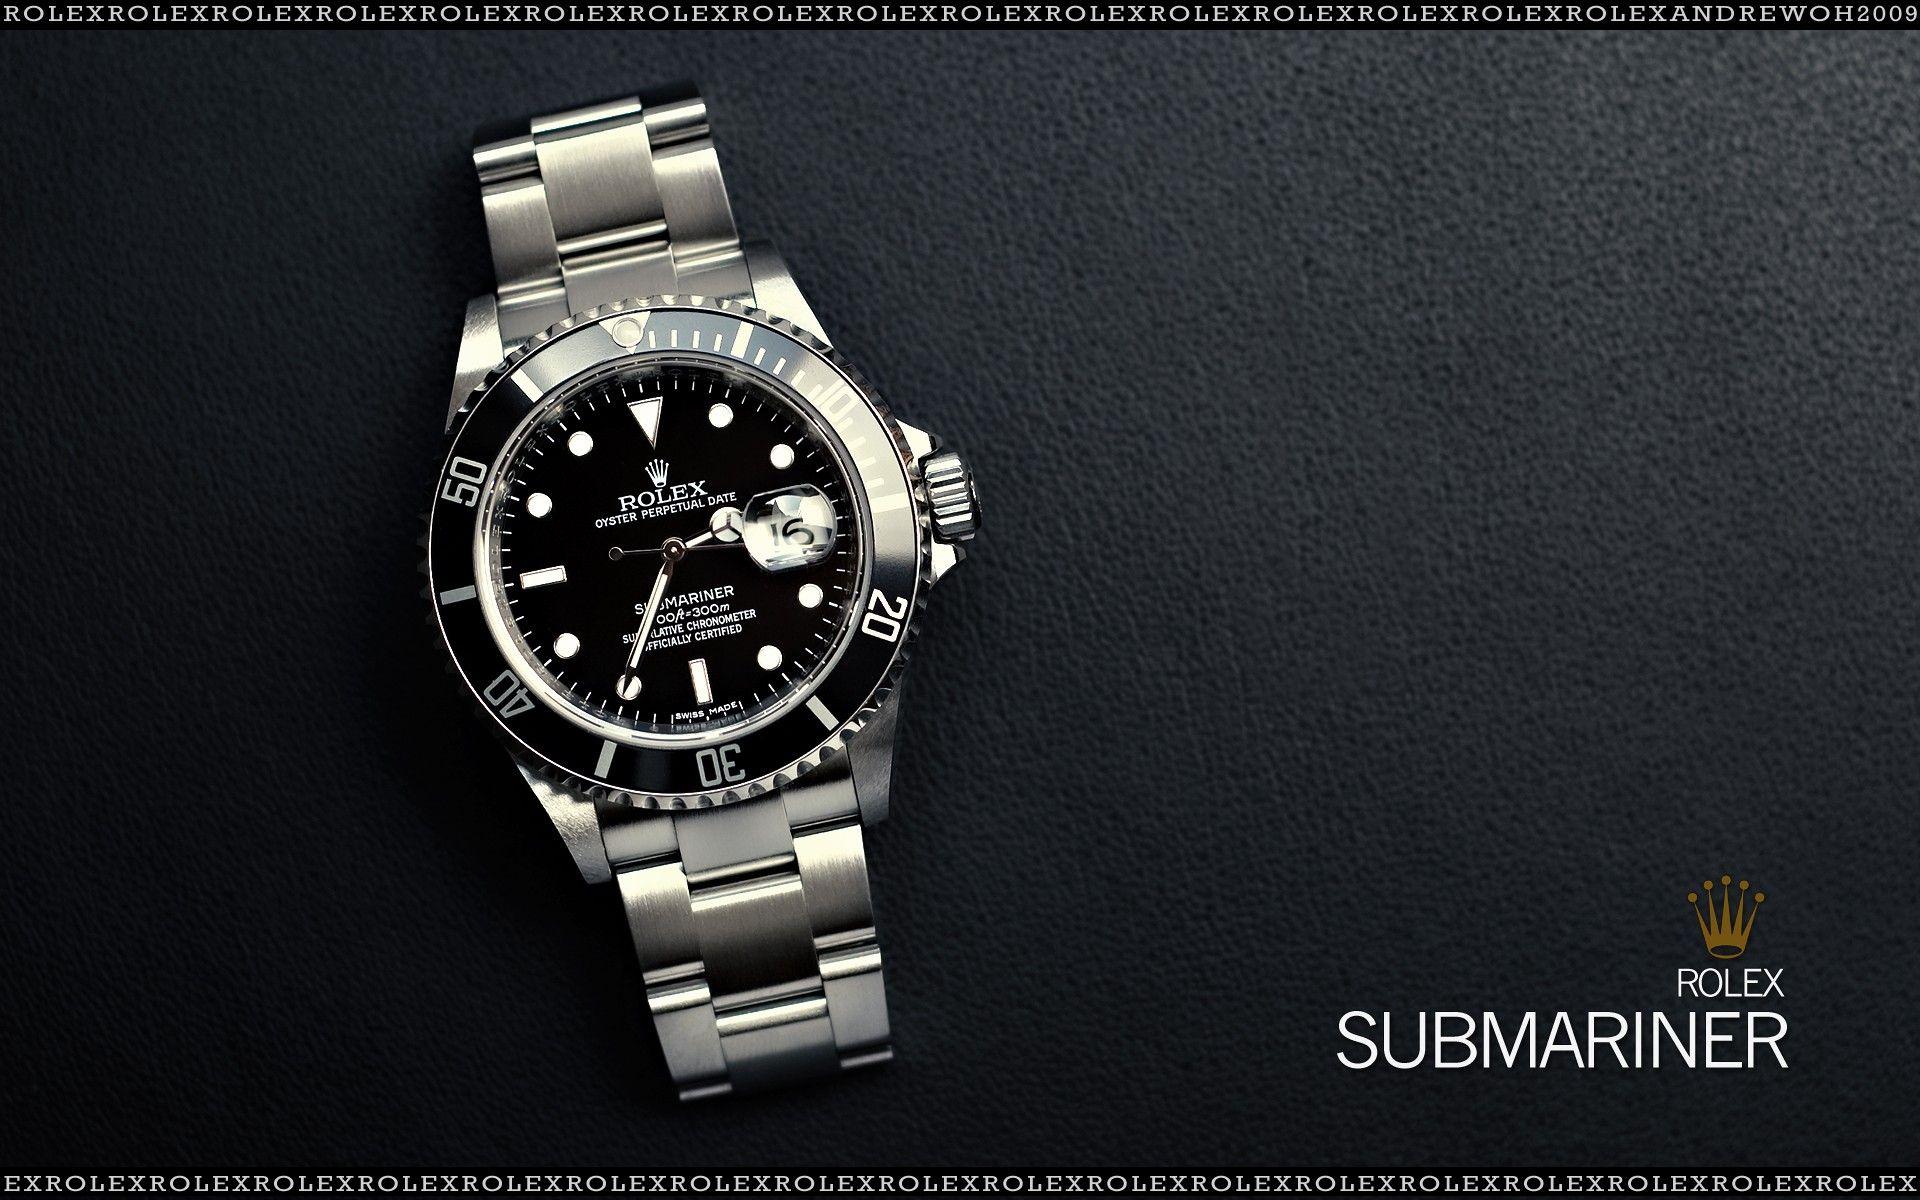 Rolex Submariner, Swiss Made Watch 1920x1200 WIDE Image Brands & Ads